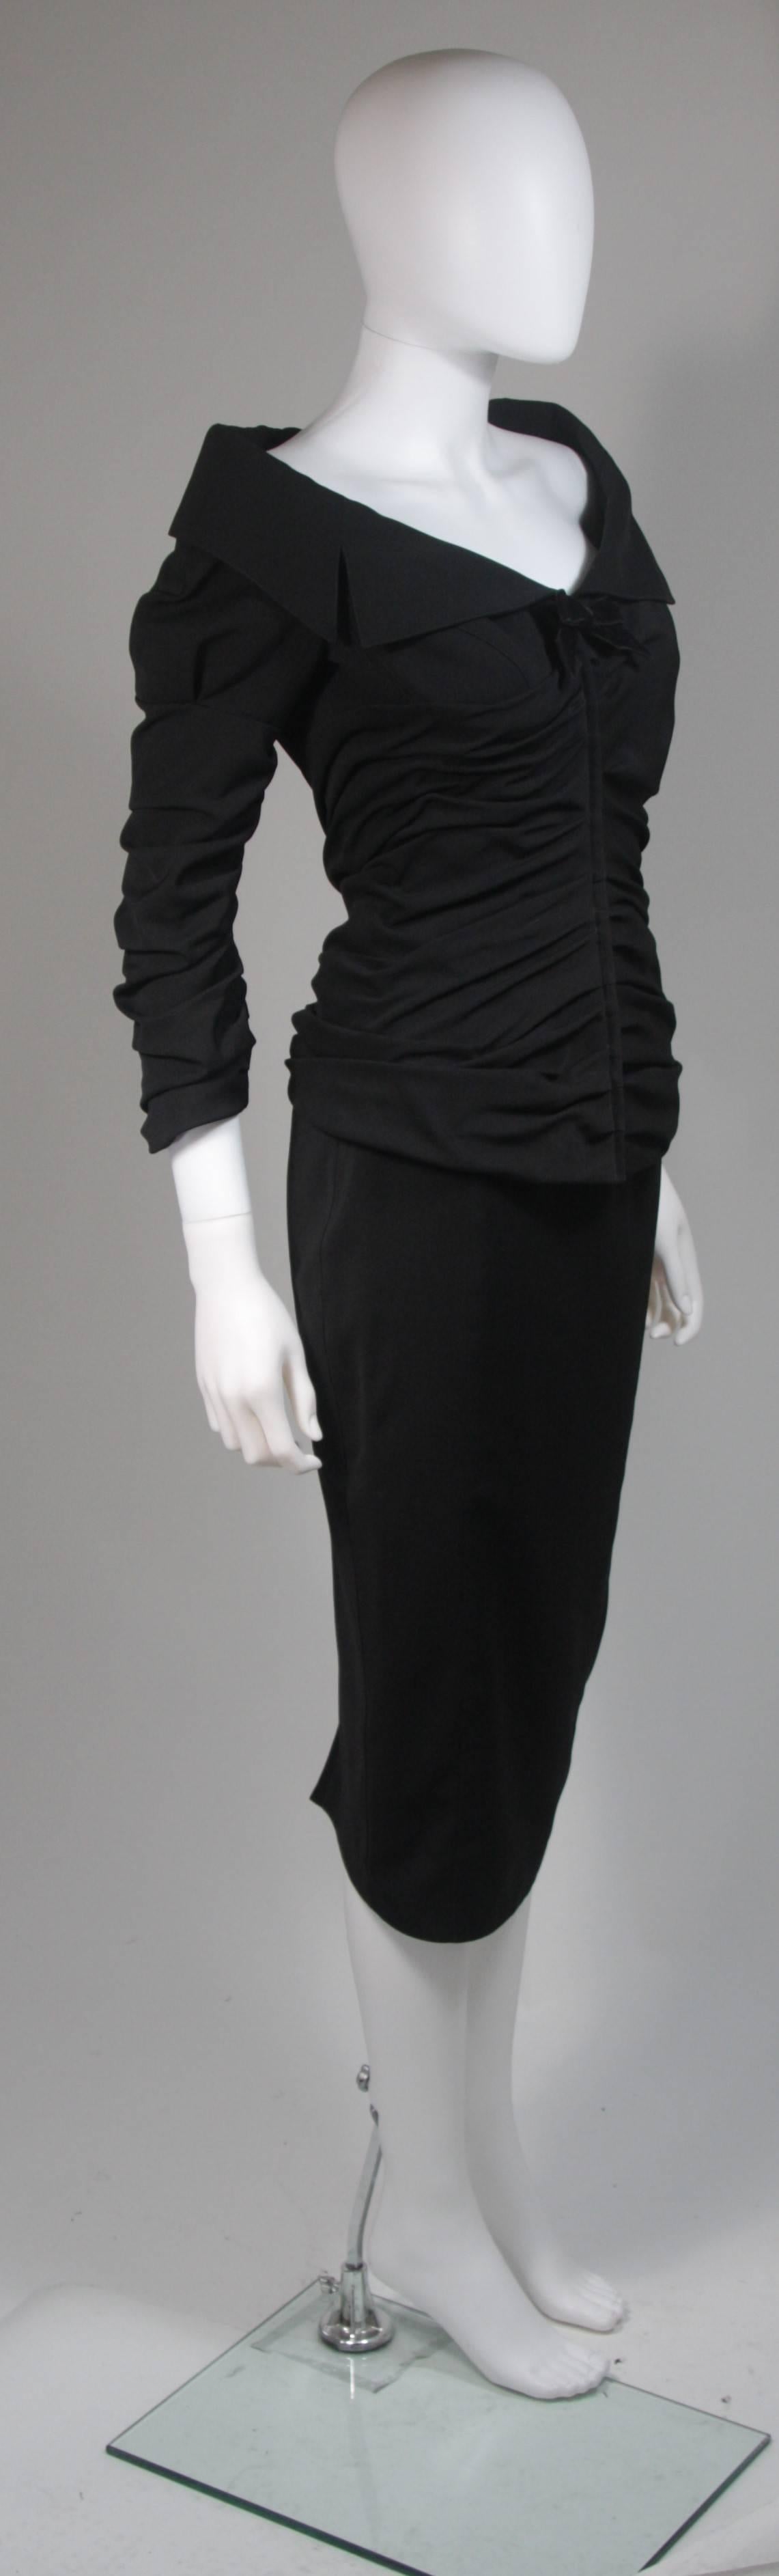 1950s black suit